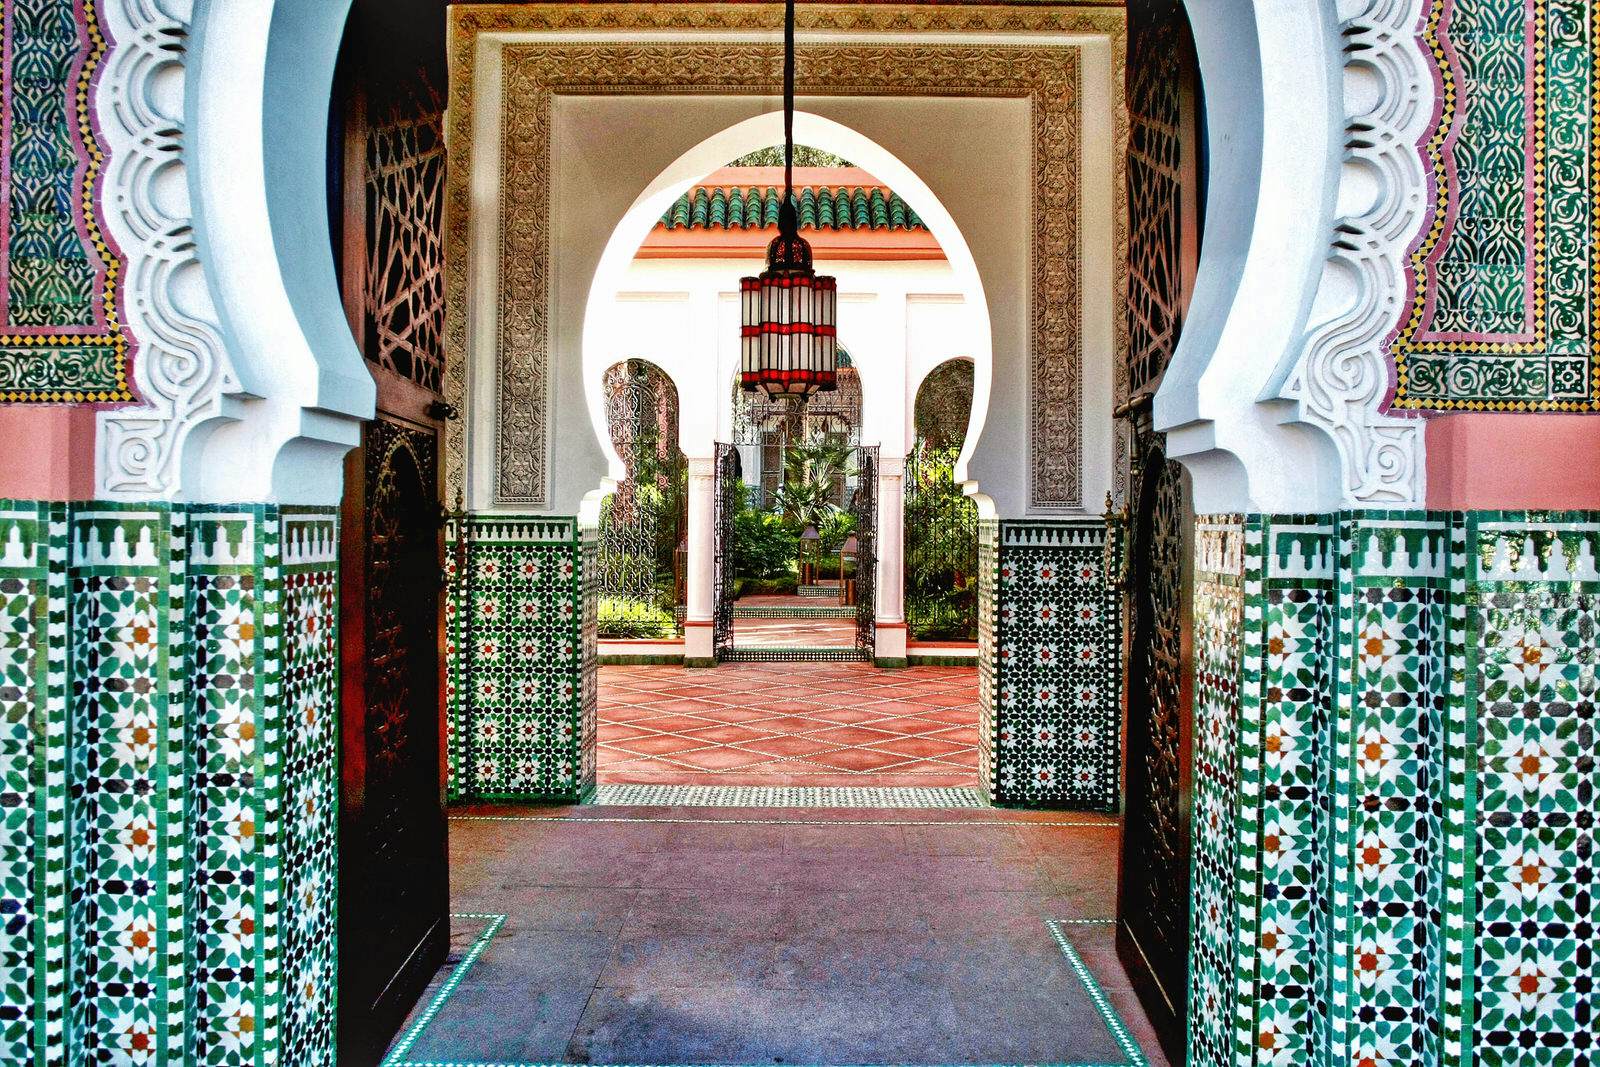 Hammam Marrakesh: Bạn muốn trải nghiệm cảm giác thư giãn tột đỉnh? Hãy đến Hammam Marrakesh, nơi có các liệu pháp xông hơi và xả stress theo phong cách Maroc truyền thống. Trong không gian sang trọng và lãng mạn, bạn sẽ được thư giãn với các liệu trình spa đặc sắc.